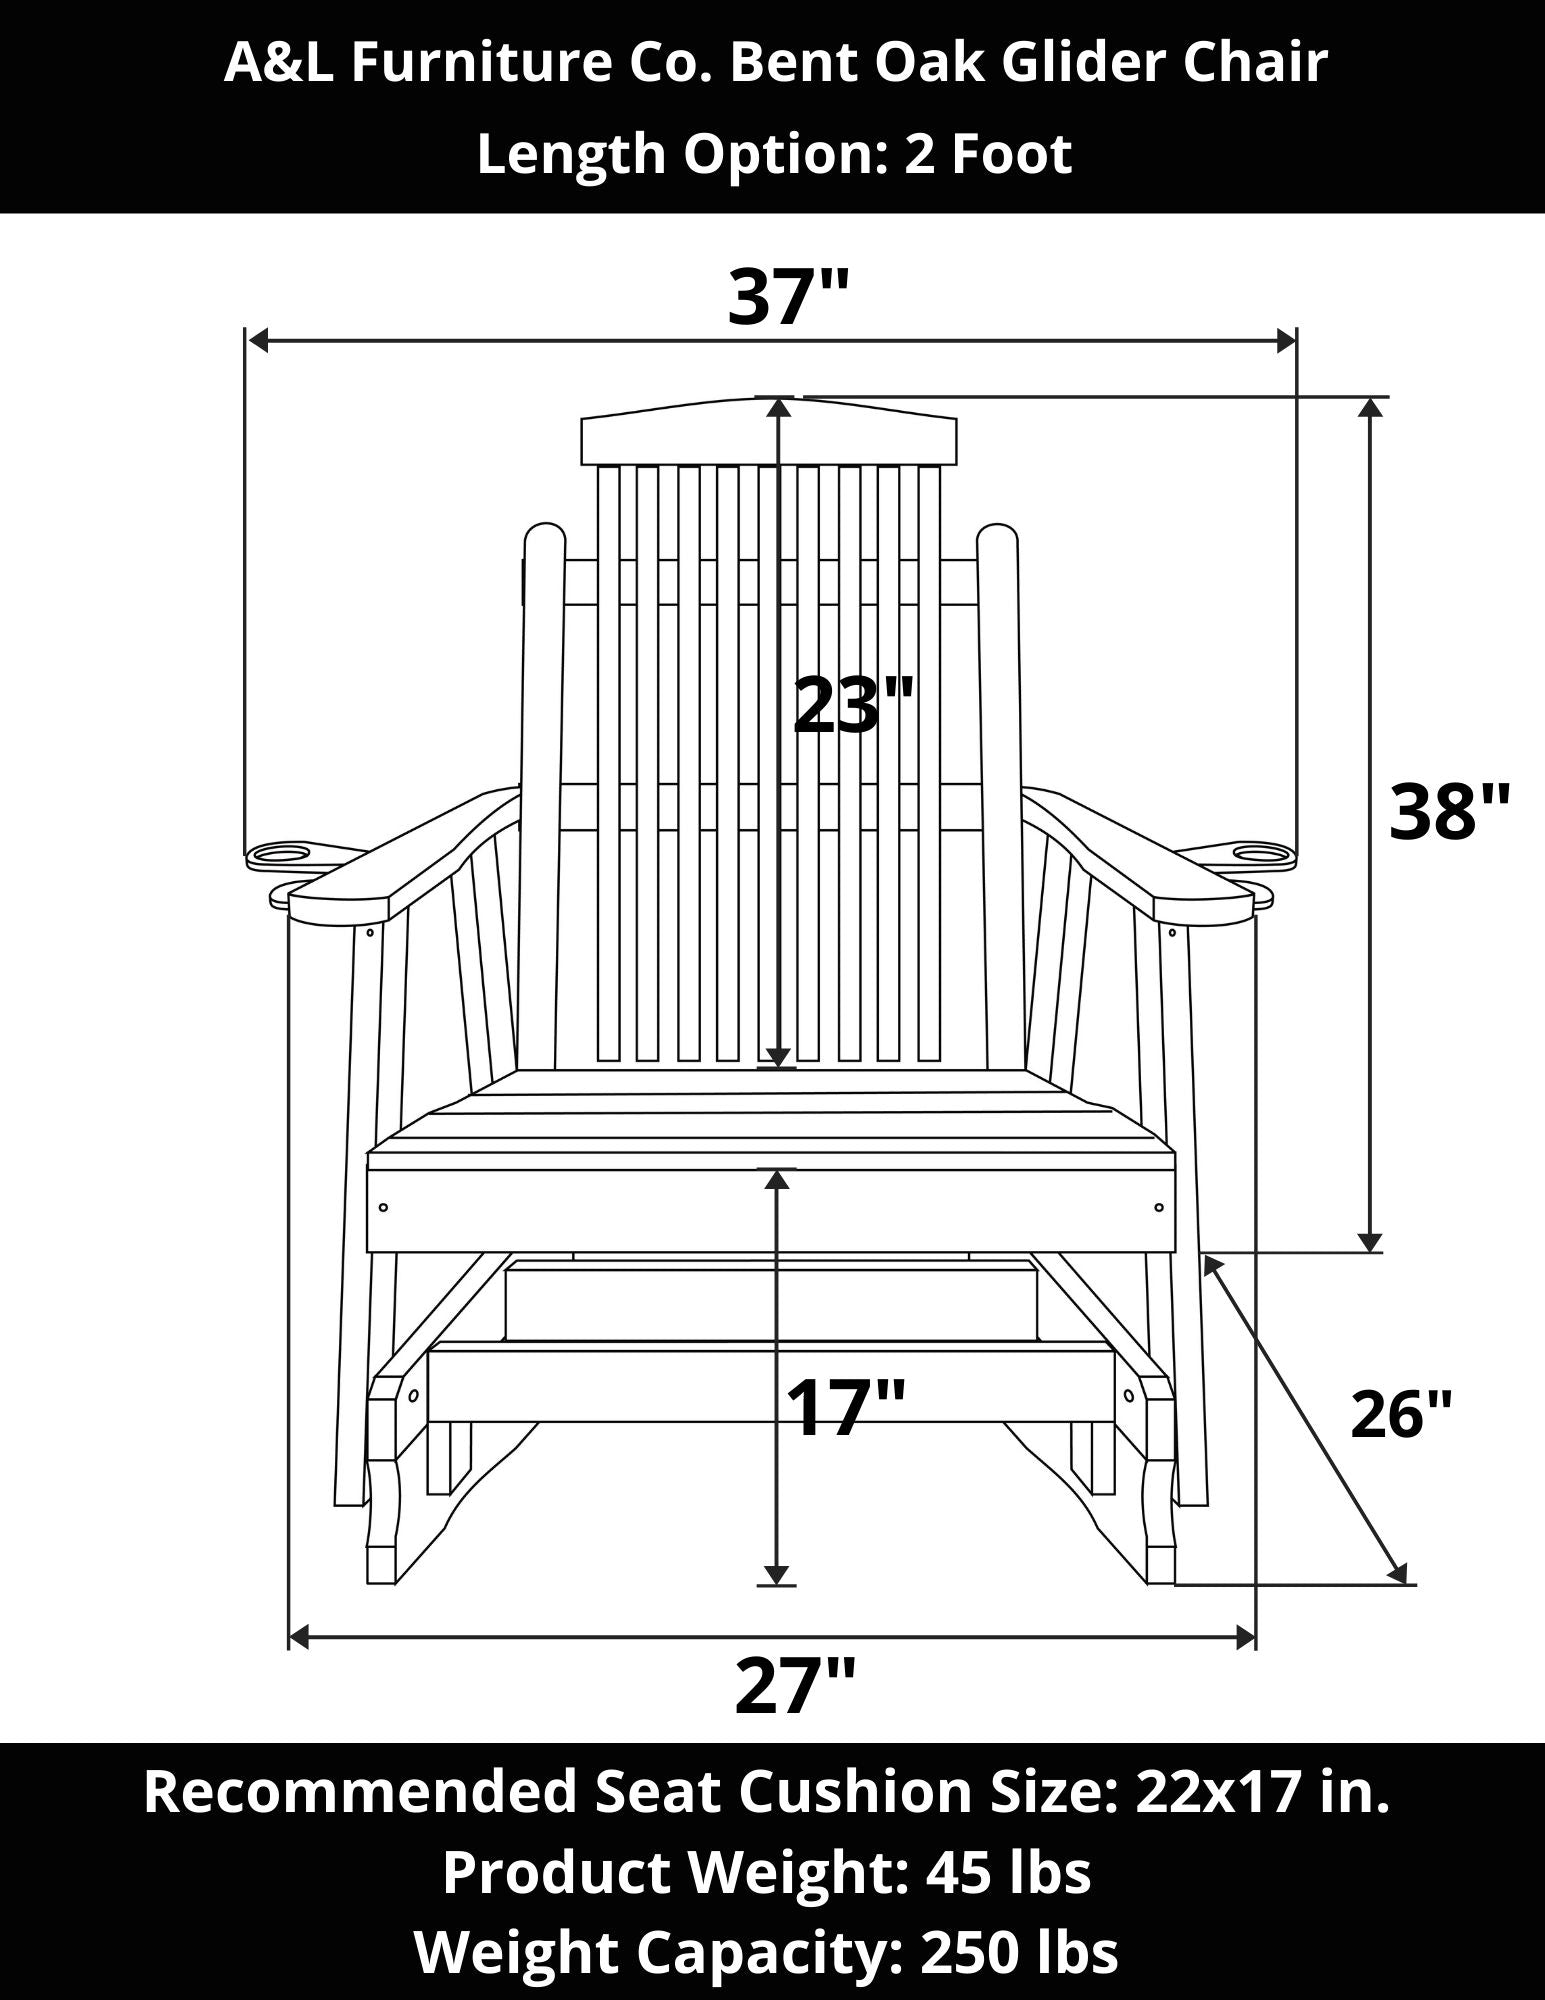 A&L Furniture Co. Bent Oak Glider Chair